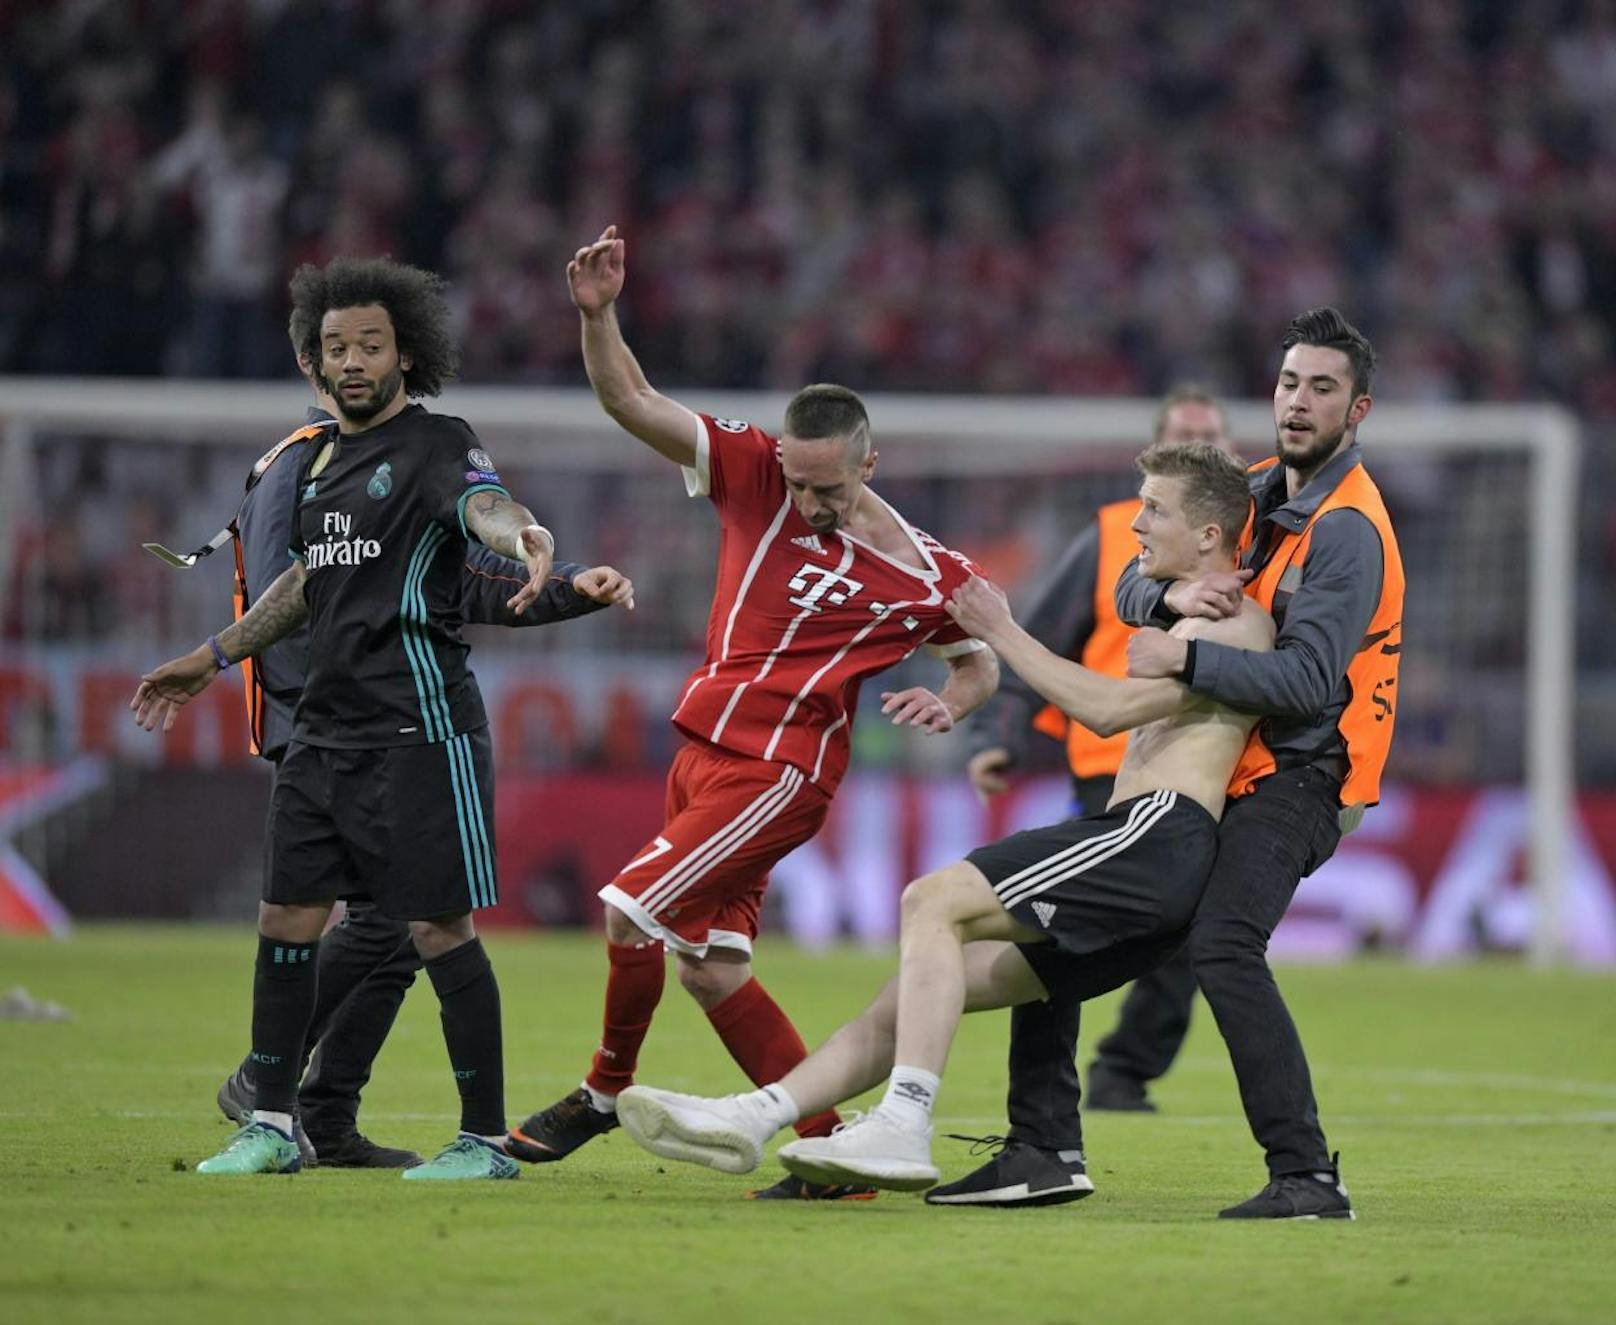 Gleich mehrere Flitzer rannten nach dem Halbfinal-Hinspiel zwischen Bayern und Real (1:2) auf die Spieler zu, wollten Selfies oder wurden handgreiflich. Die Ordner reagierten unsanft mit Football-Tacklings.